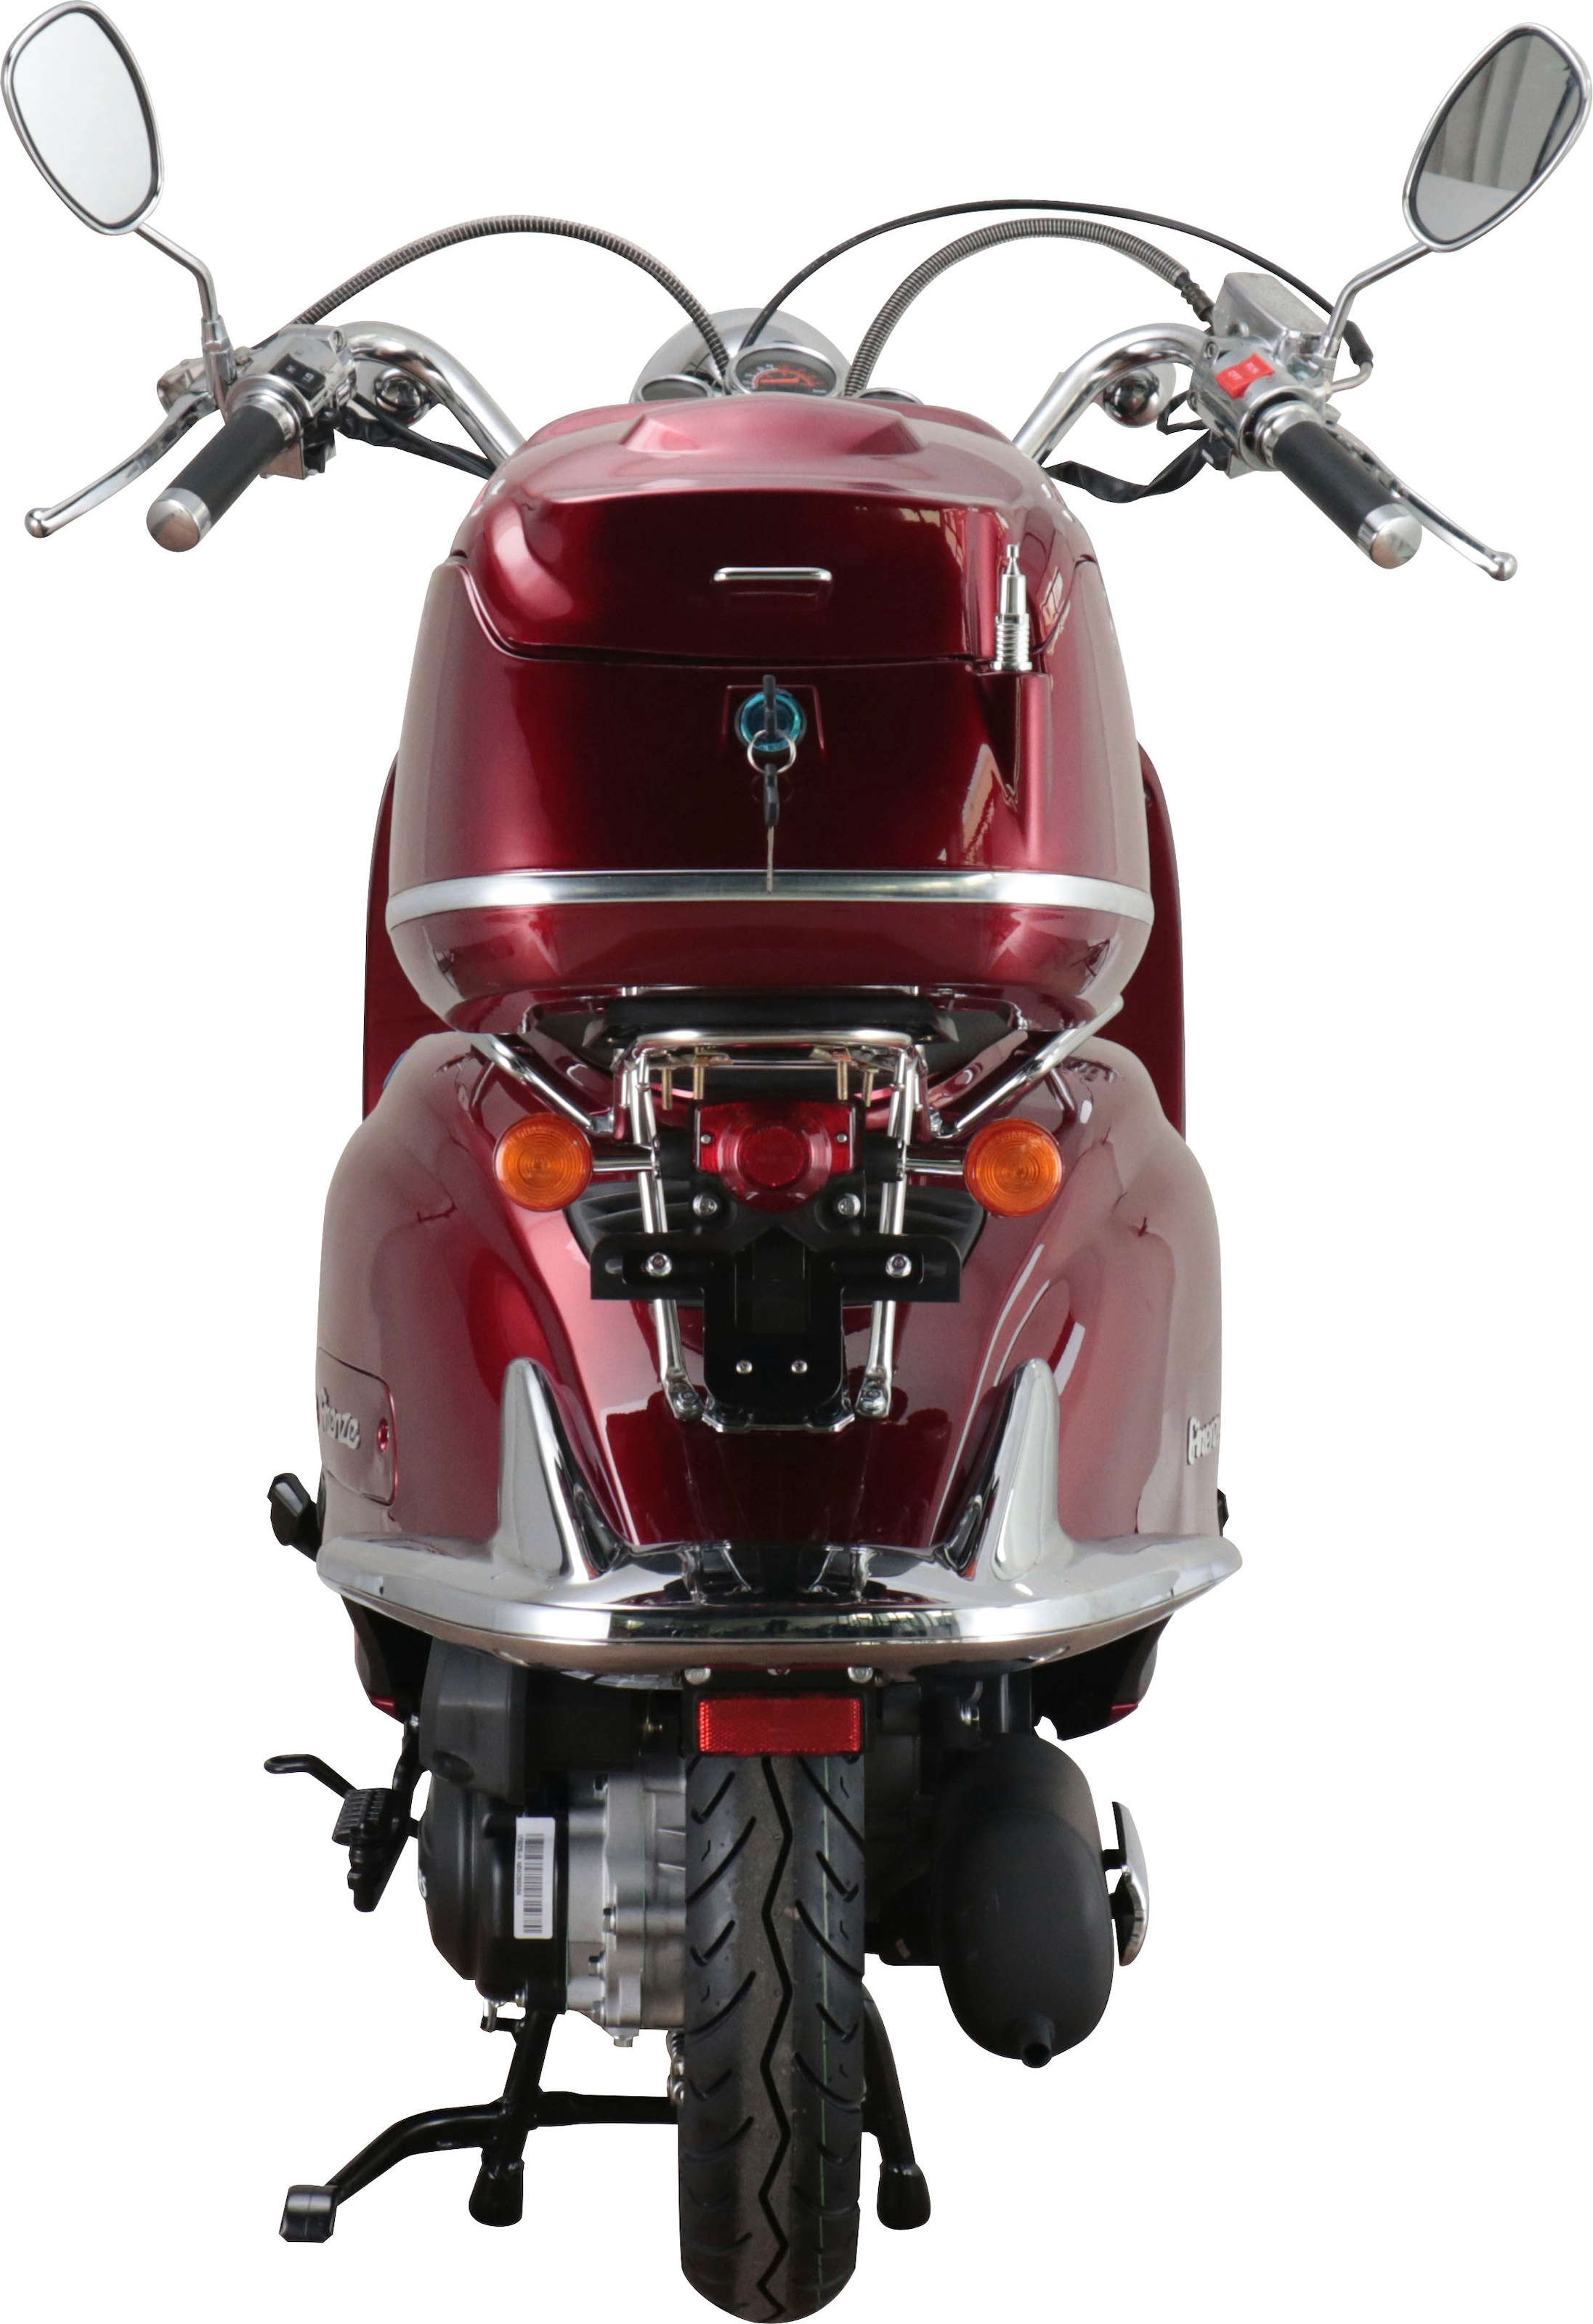 Alpha Motors Motorroller »Retro Firenze«, 50 cm³, 45 km/h, Euro 5, 2,99 PS, inkl. Topcase